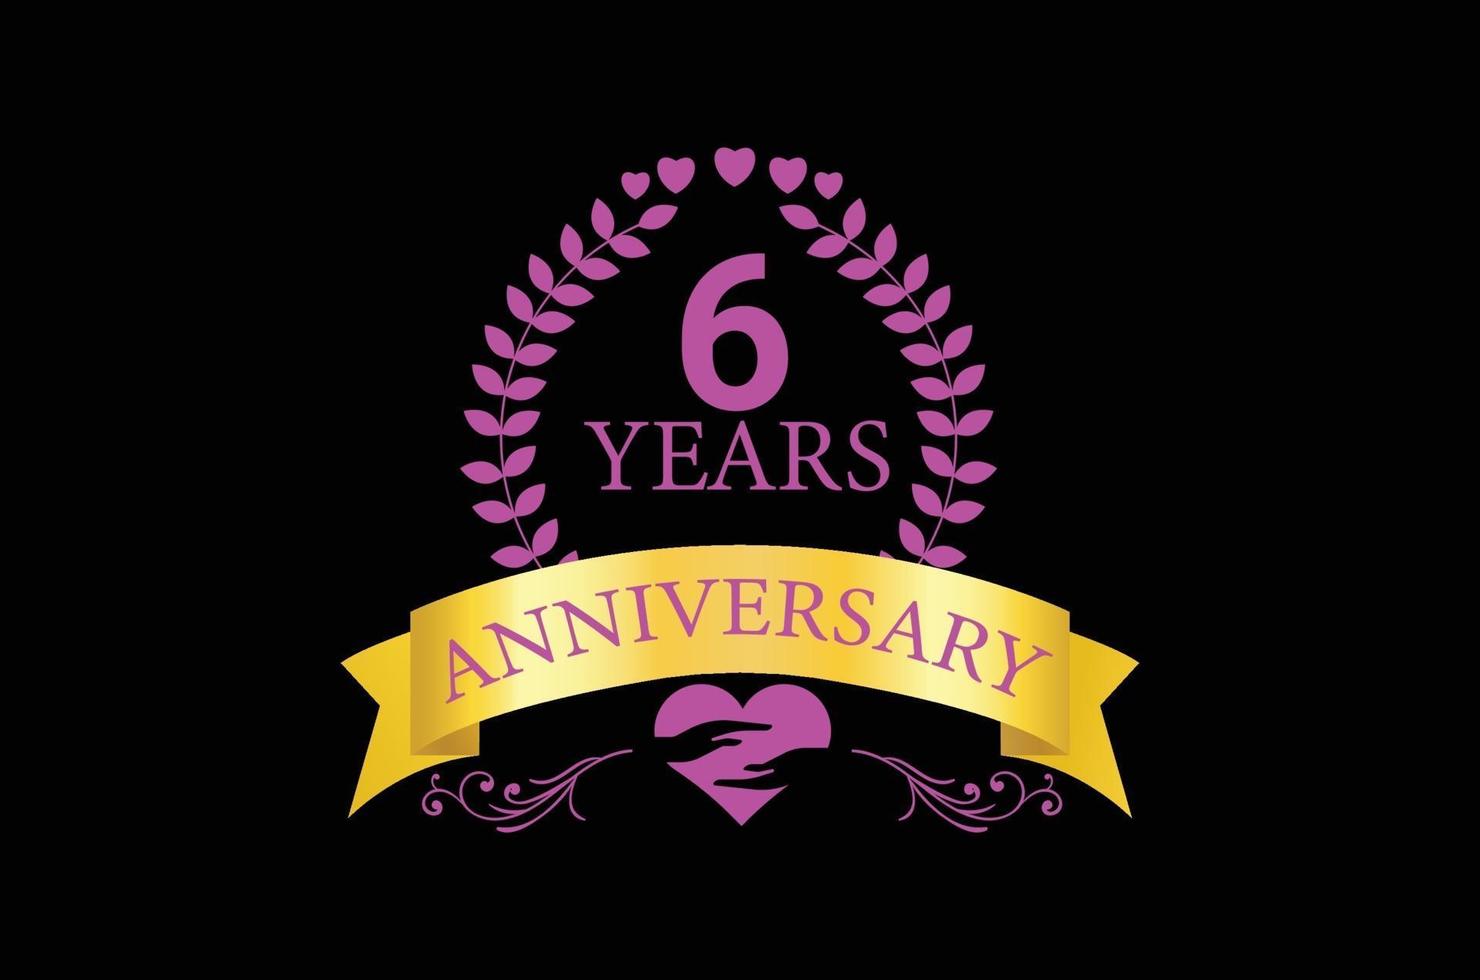 6 years anniversary luxury logo design vector